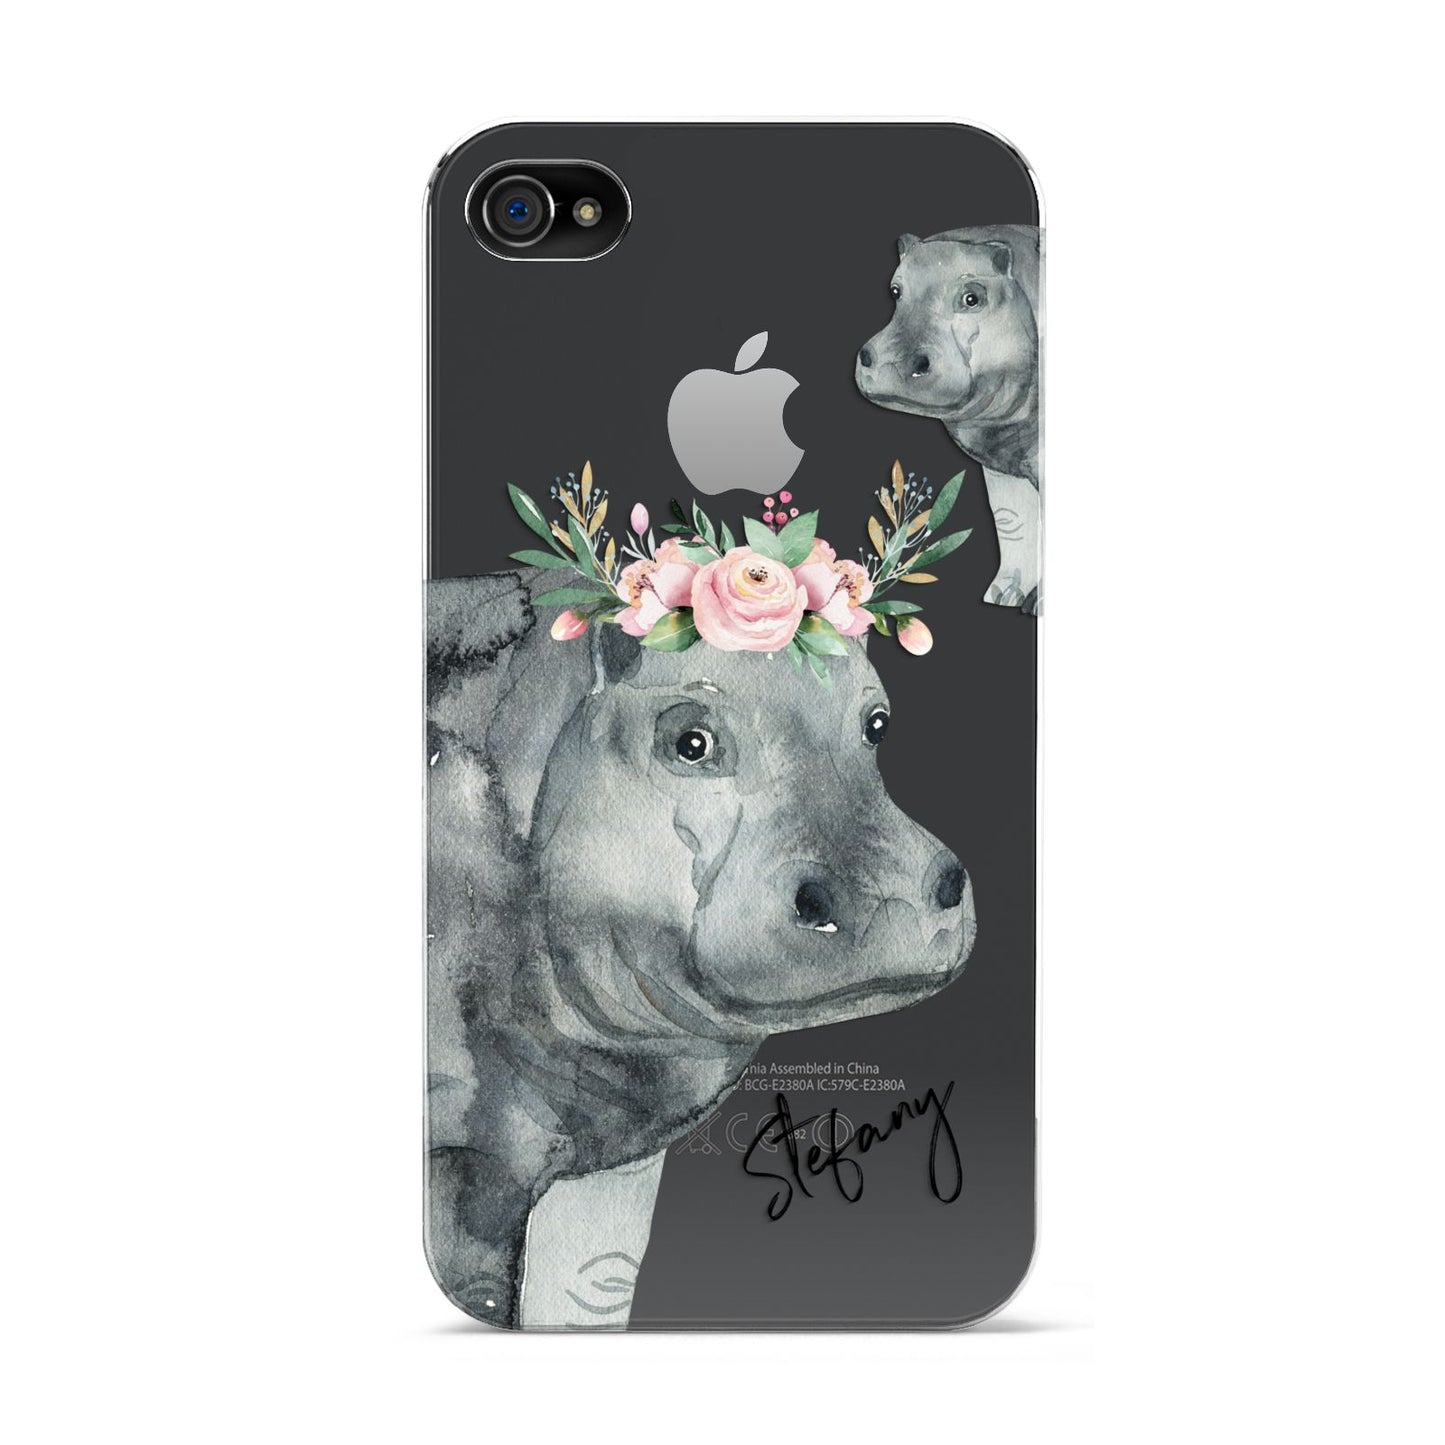 Personalised Hippopotamus Apple iPhone 4s Case